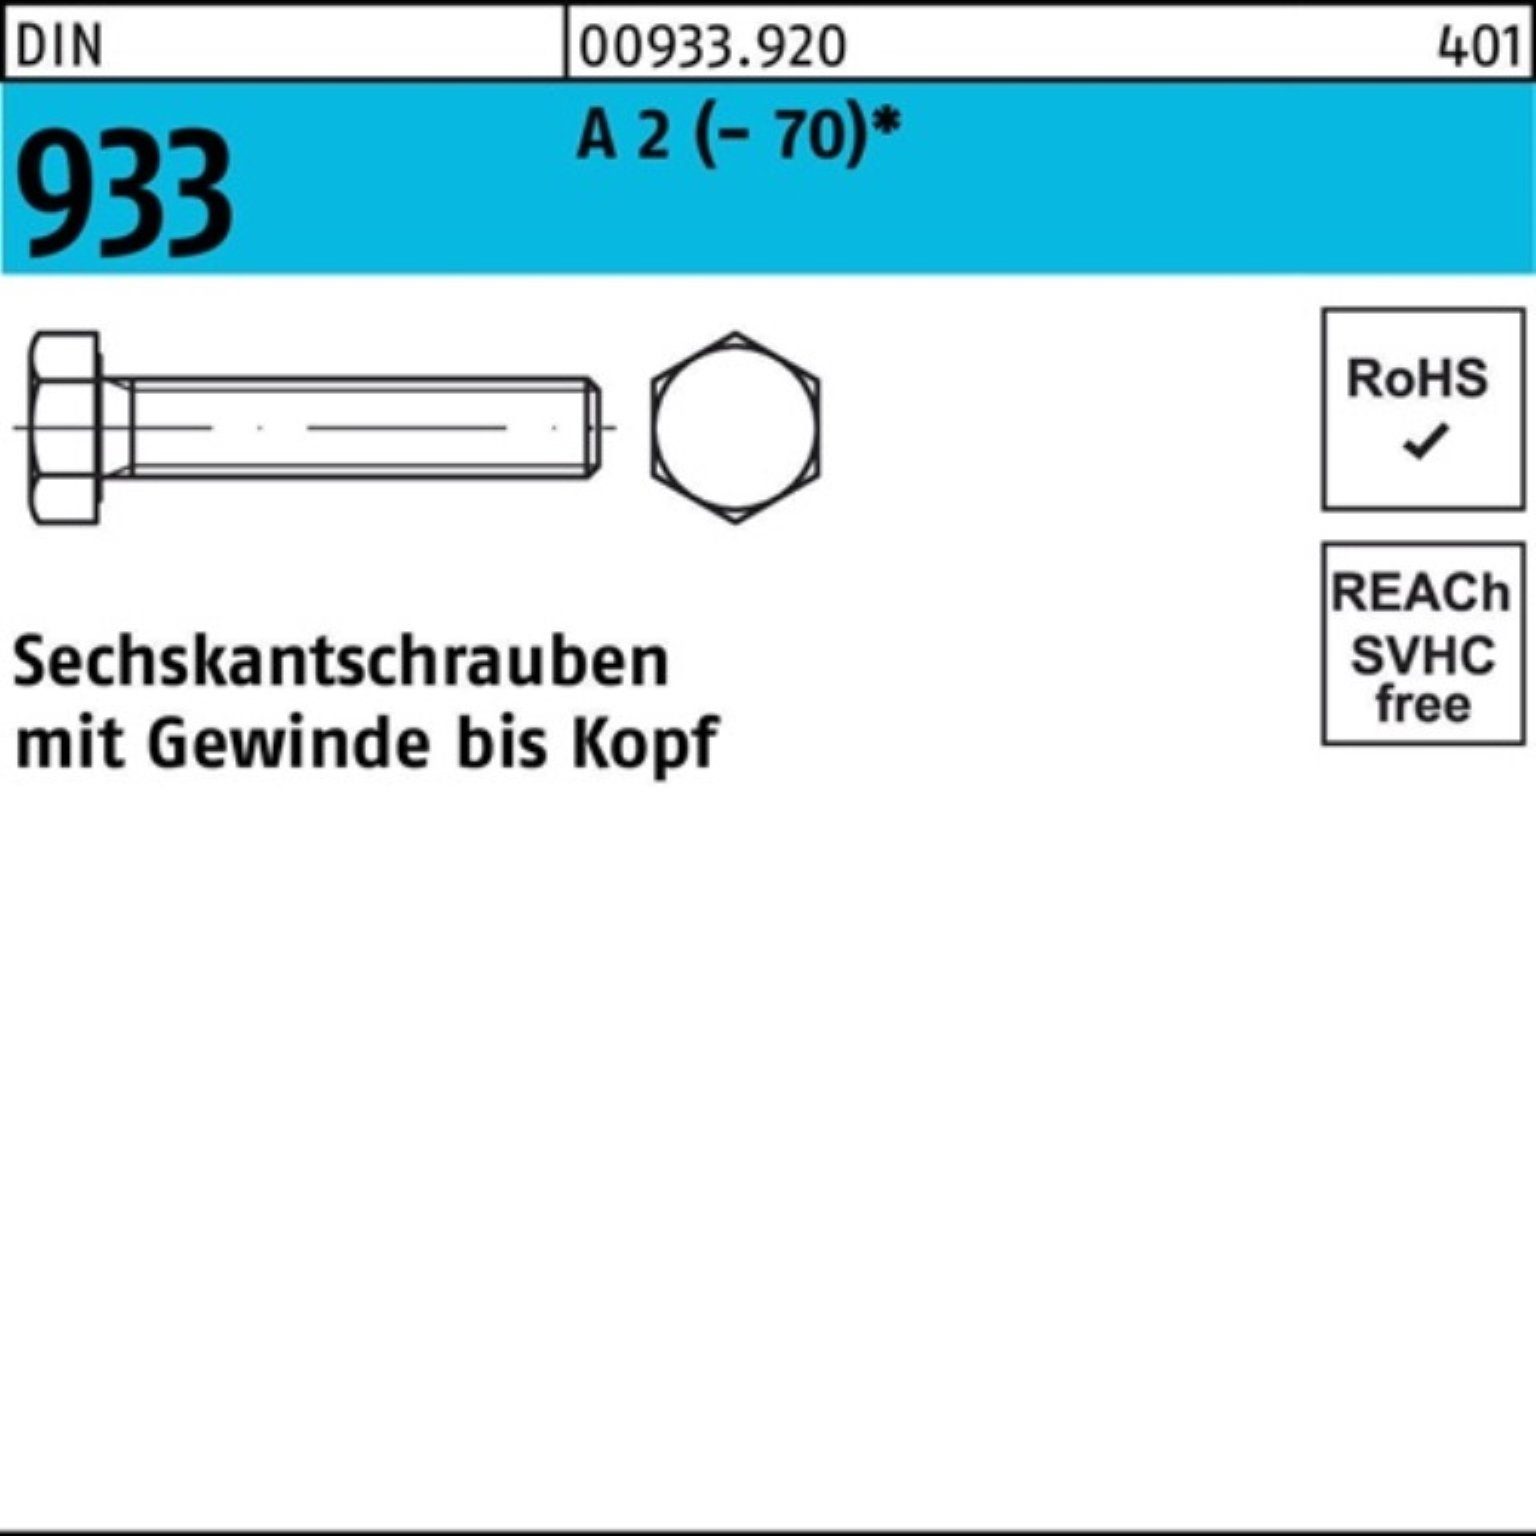 Reyher Sechskantschraube 200er Pack Sechskantschraube DIN 933 VG M6x 30 A 2 (70) 200 Stück D